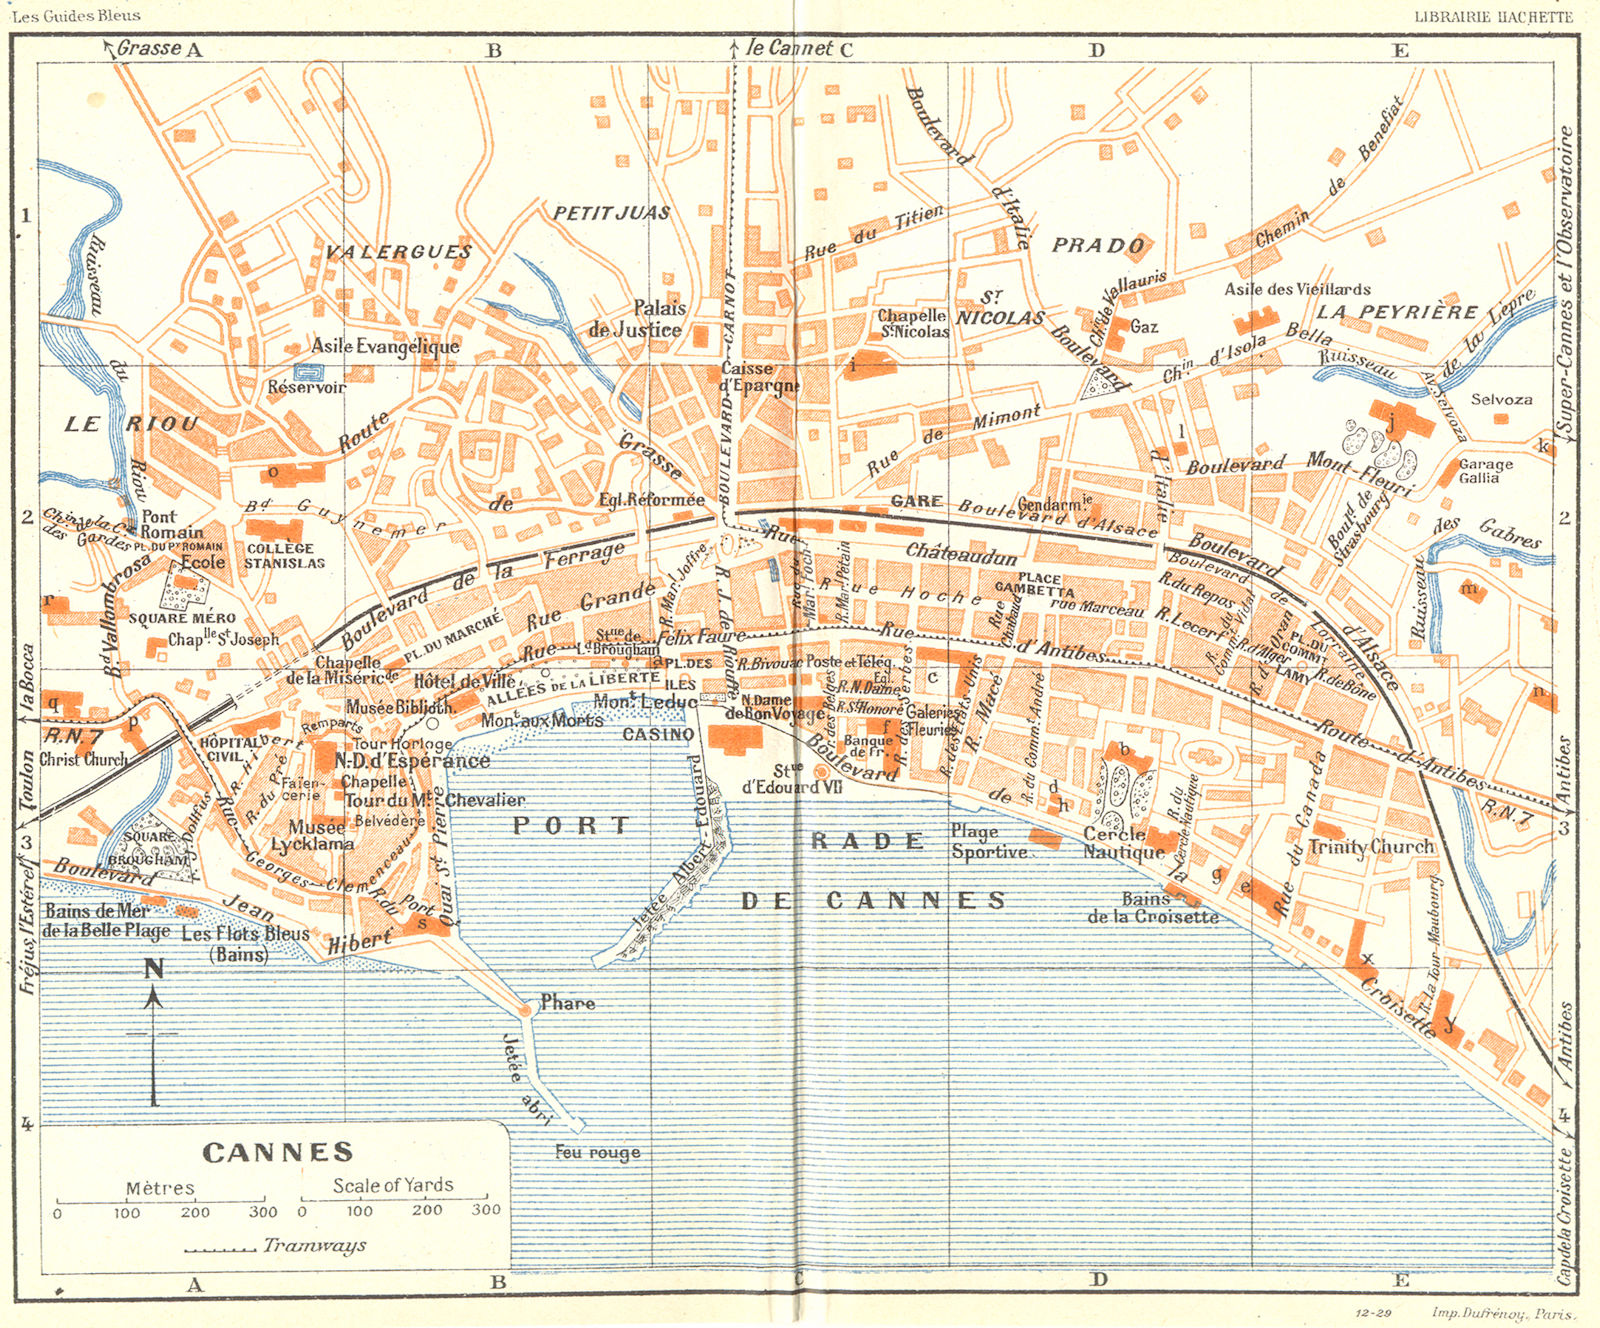 COTE D'AZUR. Cannes 1926 old vintage map plan chart